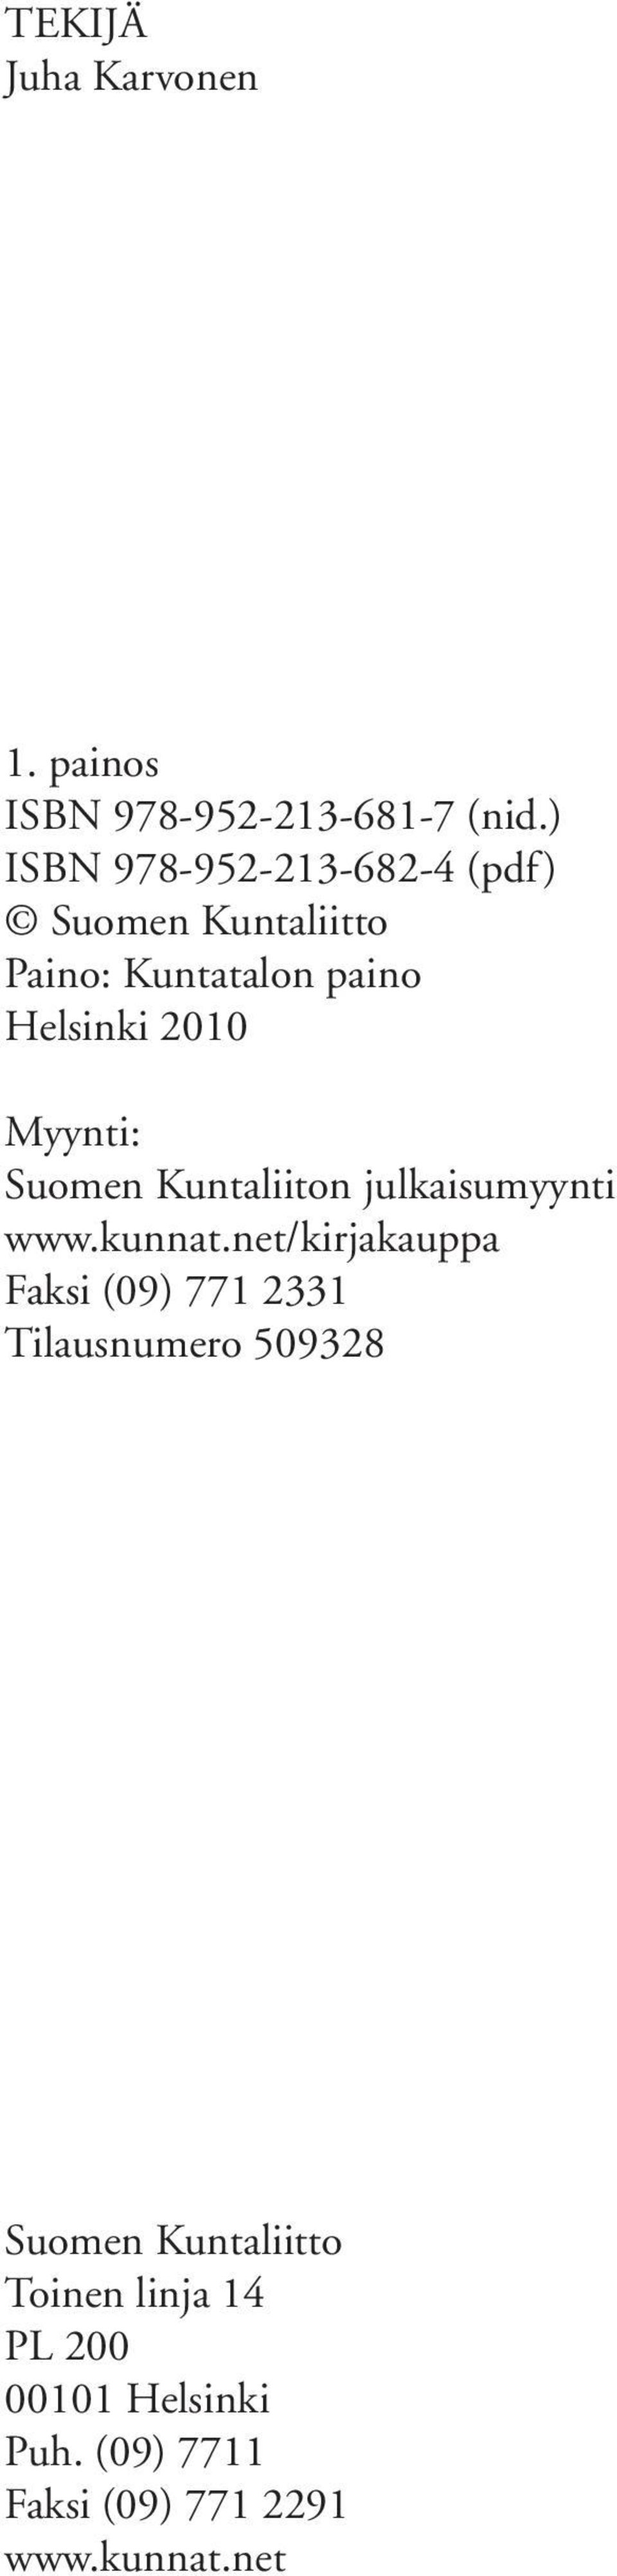 Myynti: Suomen Kuntaliiton julkaisumyynti www.kunnat.